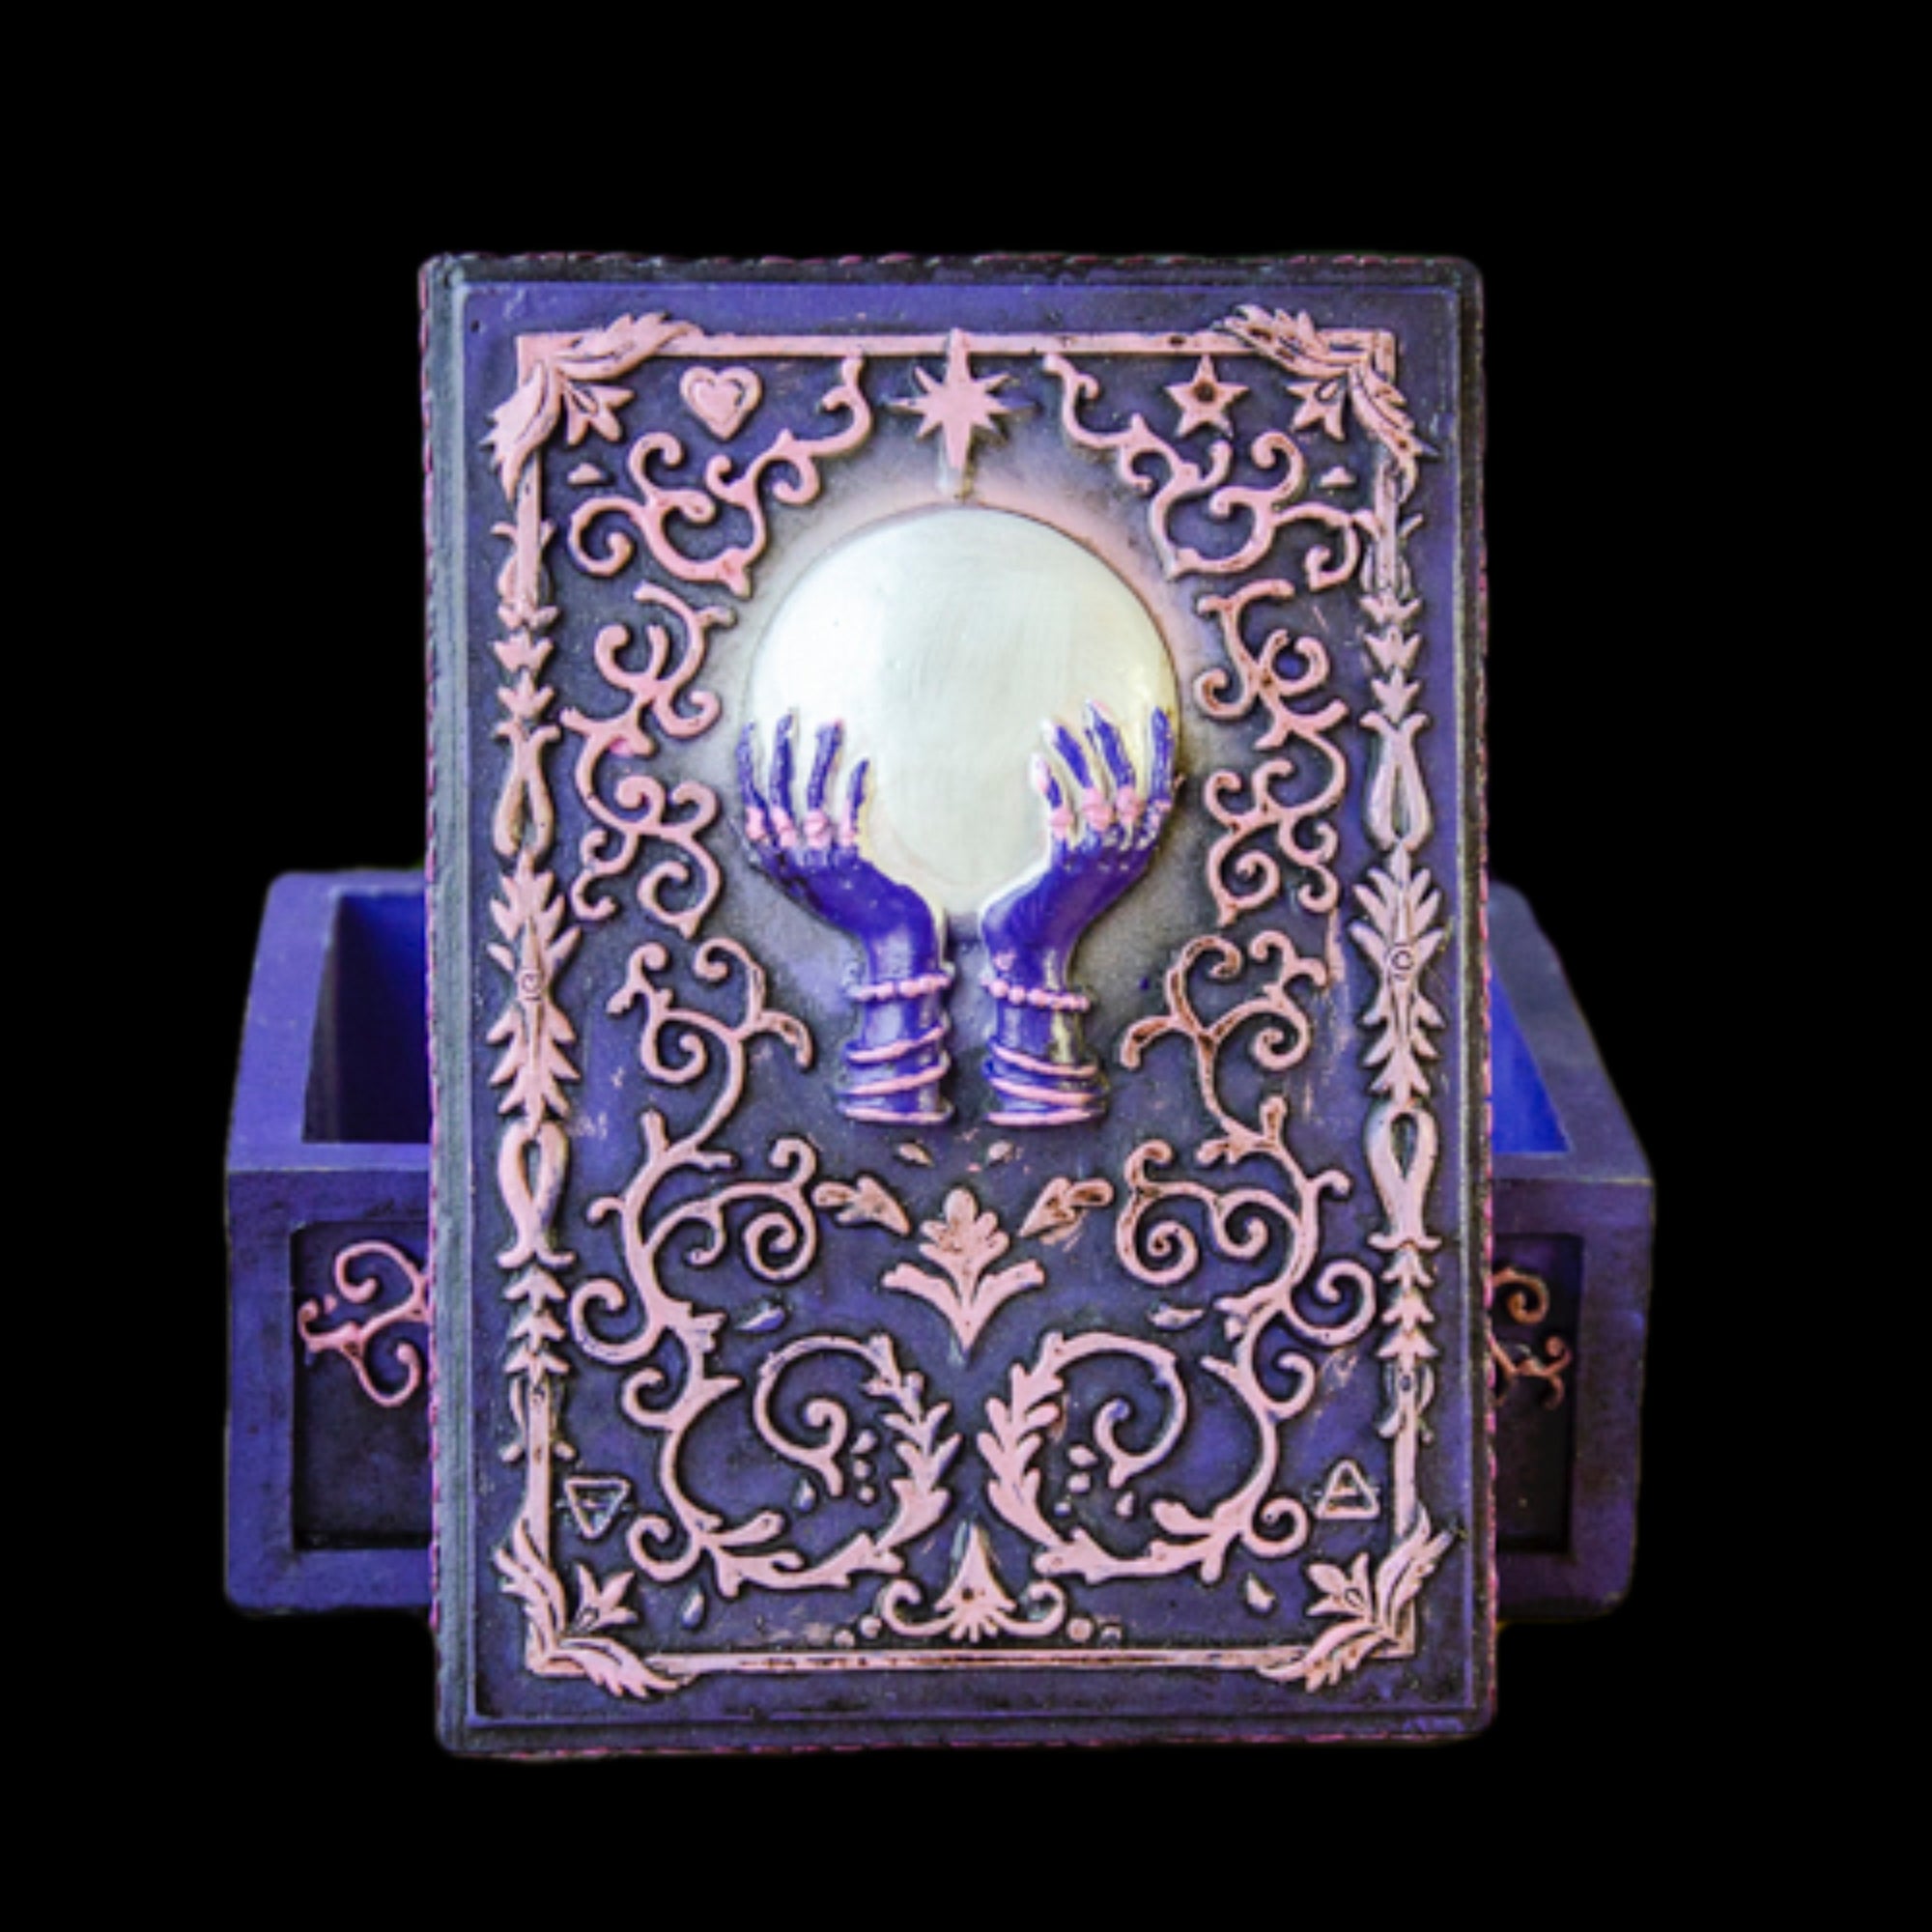 Glowing Tarot Box